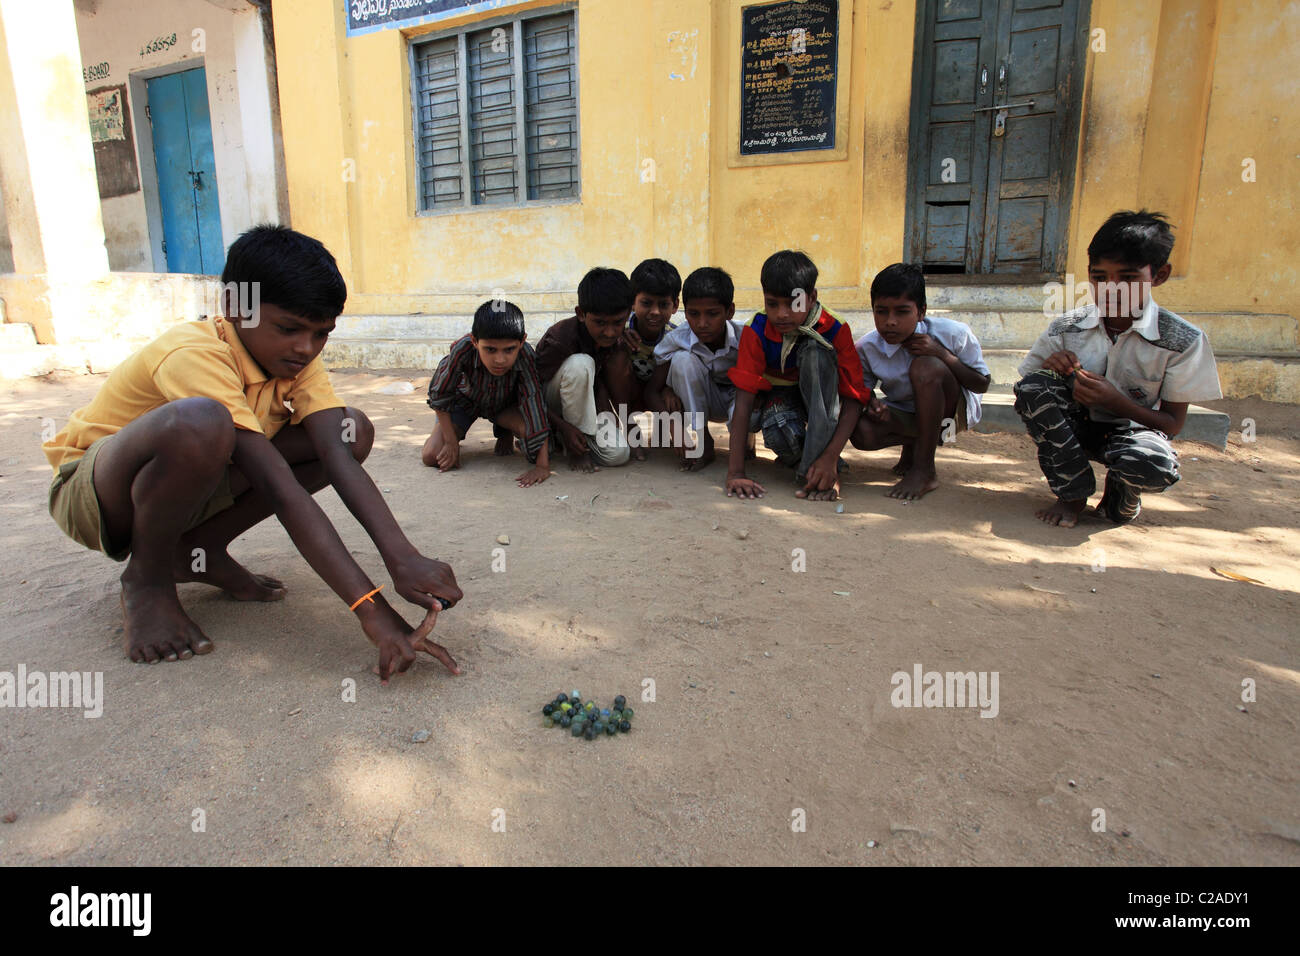 Les garçons indiens jouer avec des billes de l'Andhra Pradesh en Inde du Sud Banque D'Images